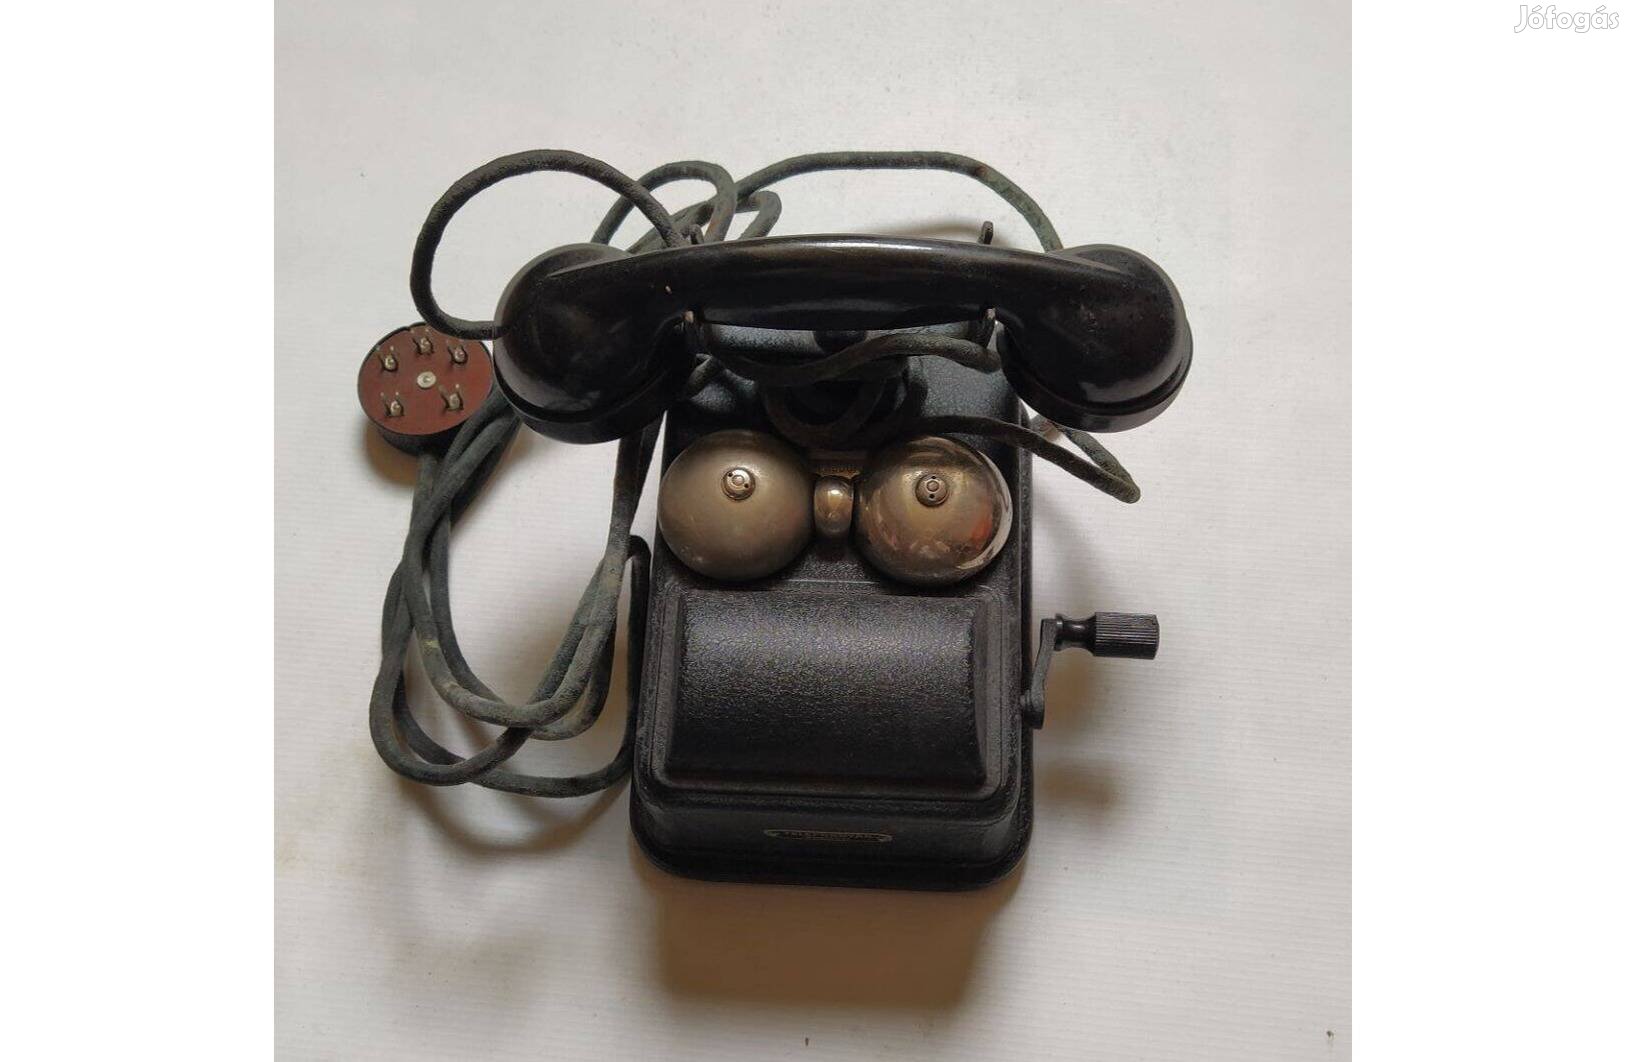 Kurblis telefon az 50-es évekből